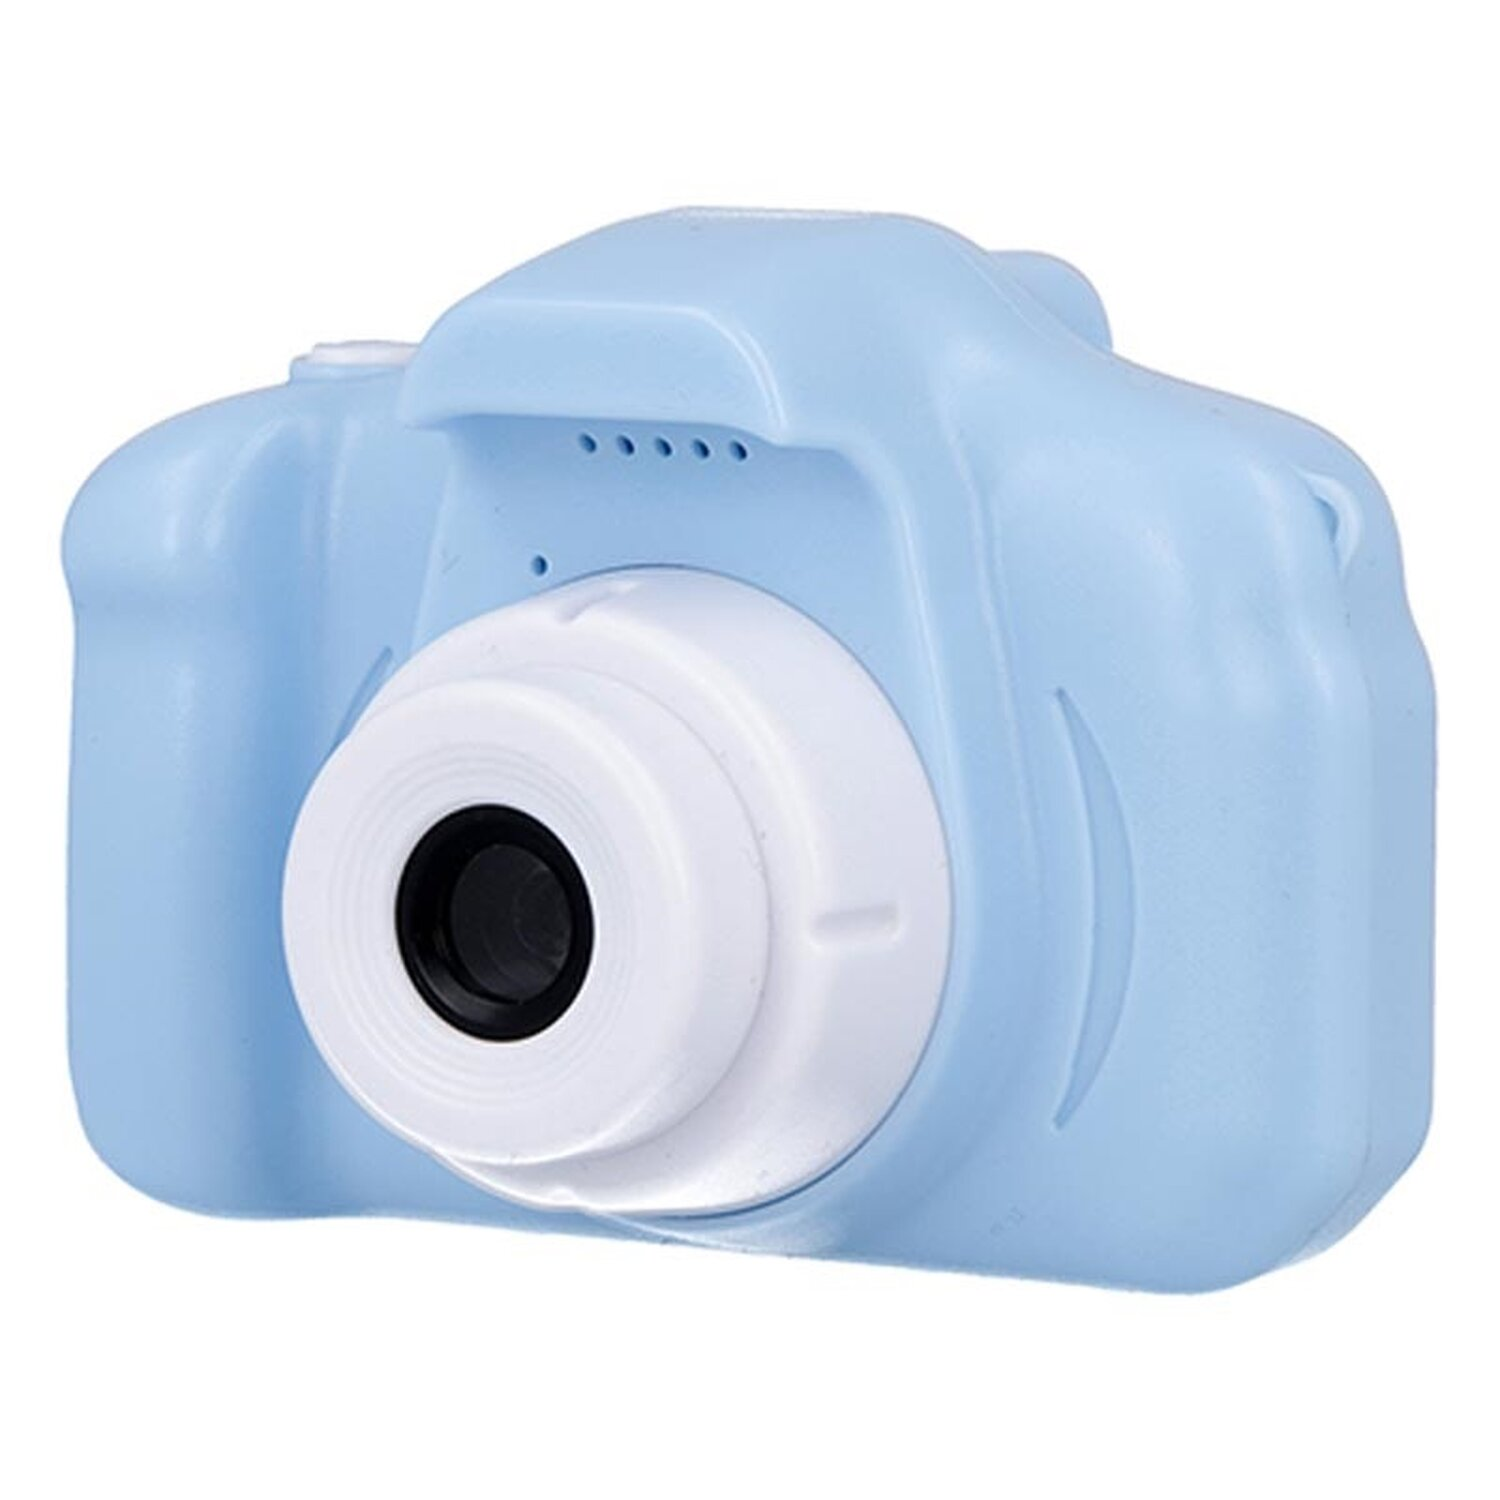 Digitalkamera SKC-100 Blau FOREVER